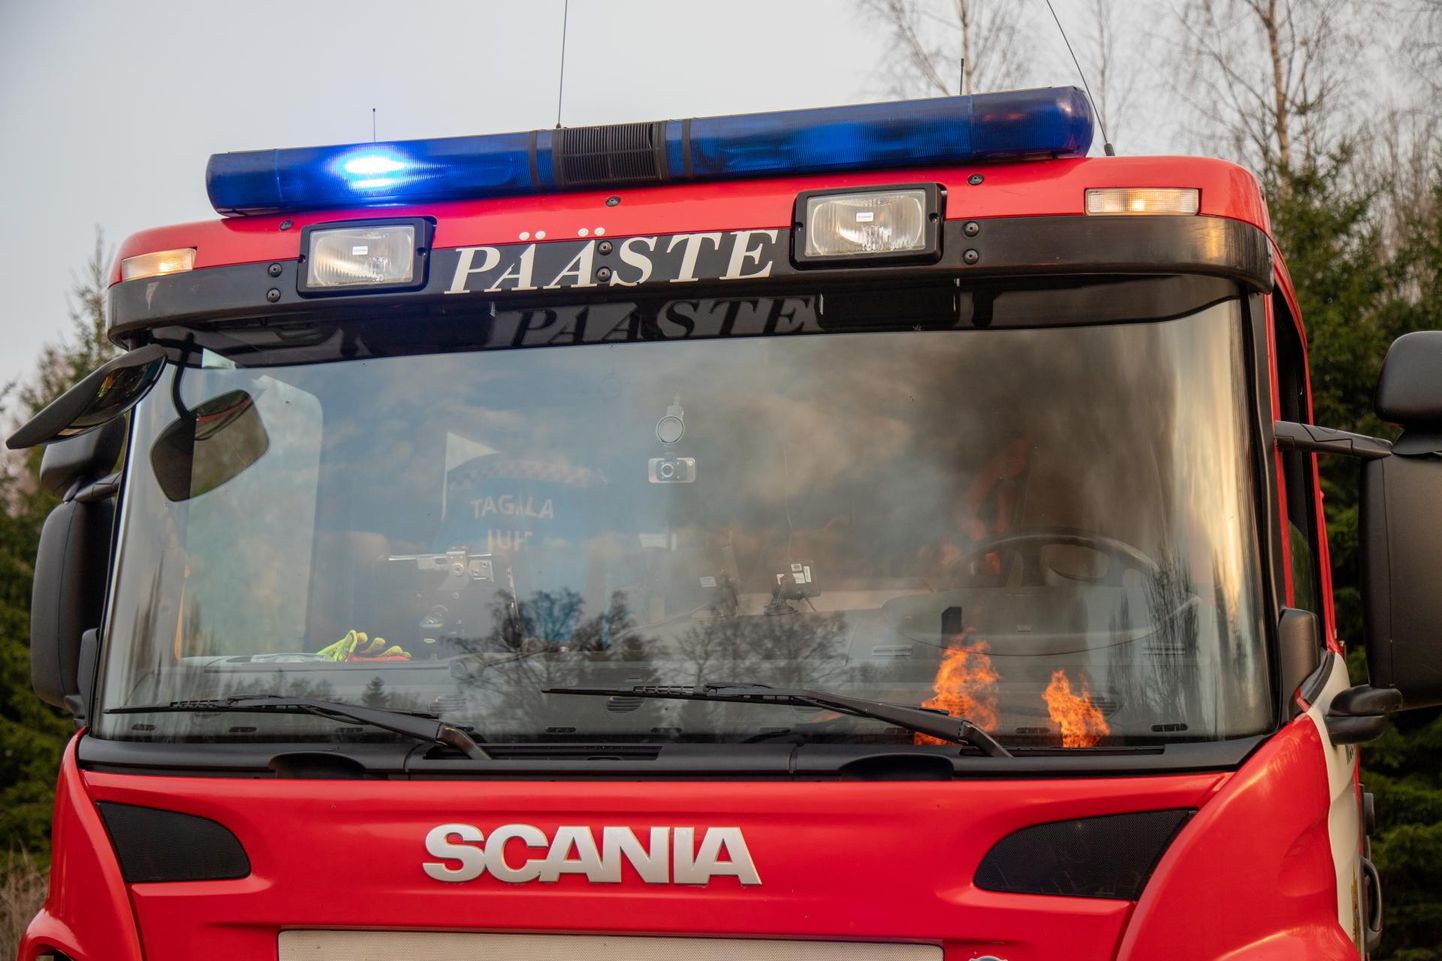 Jõesuus puhkenud korteripõlengut sõitsid kustutama Taali, Pärnu ning Vändra vabatahtlikud ja kutselised päästjad. Foto on illustratiivne.